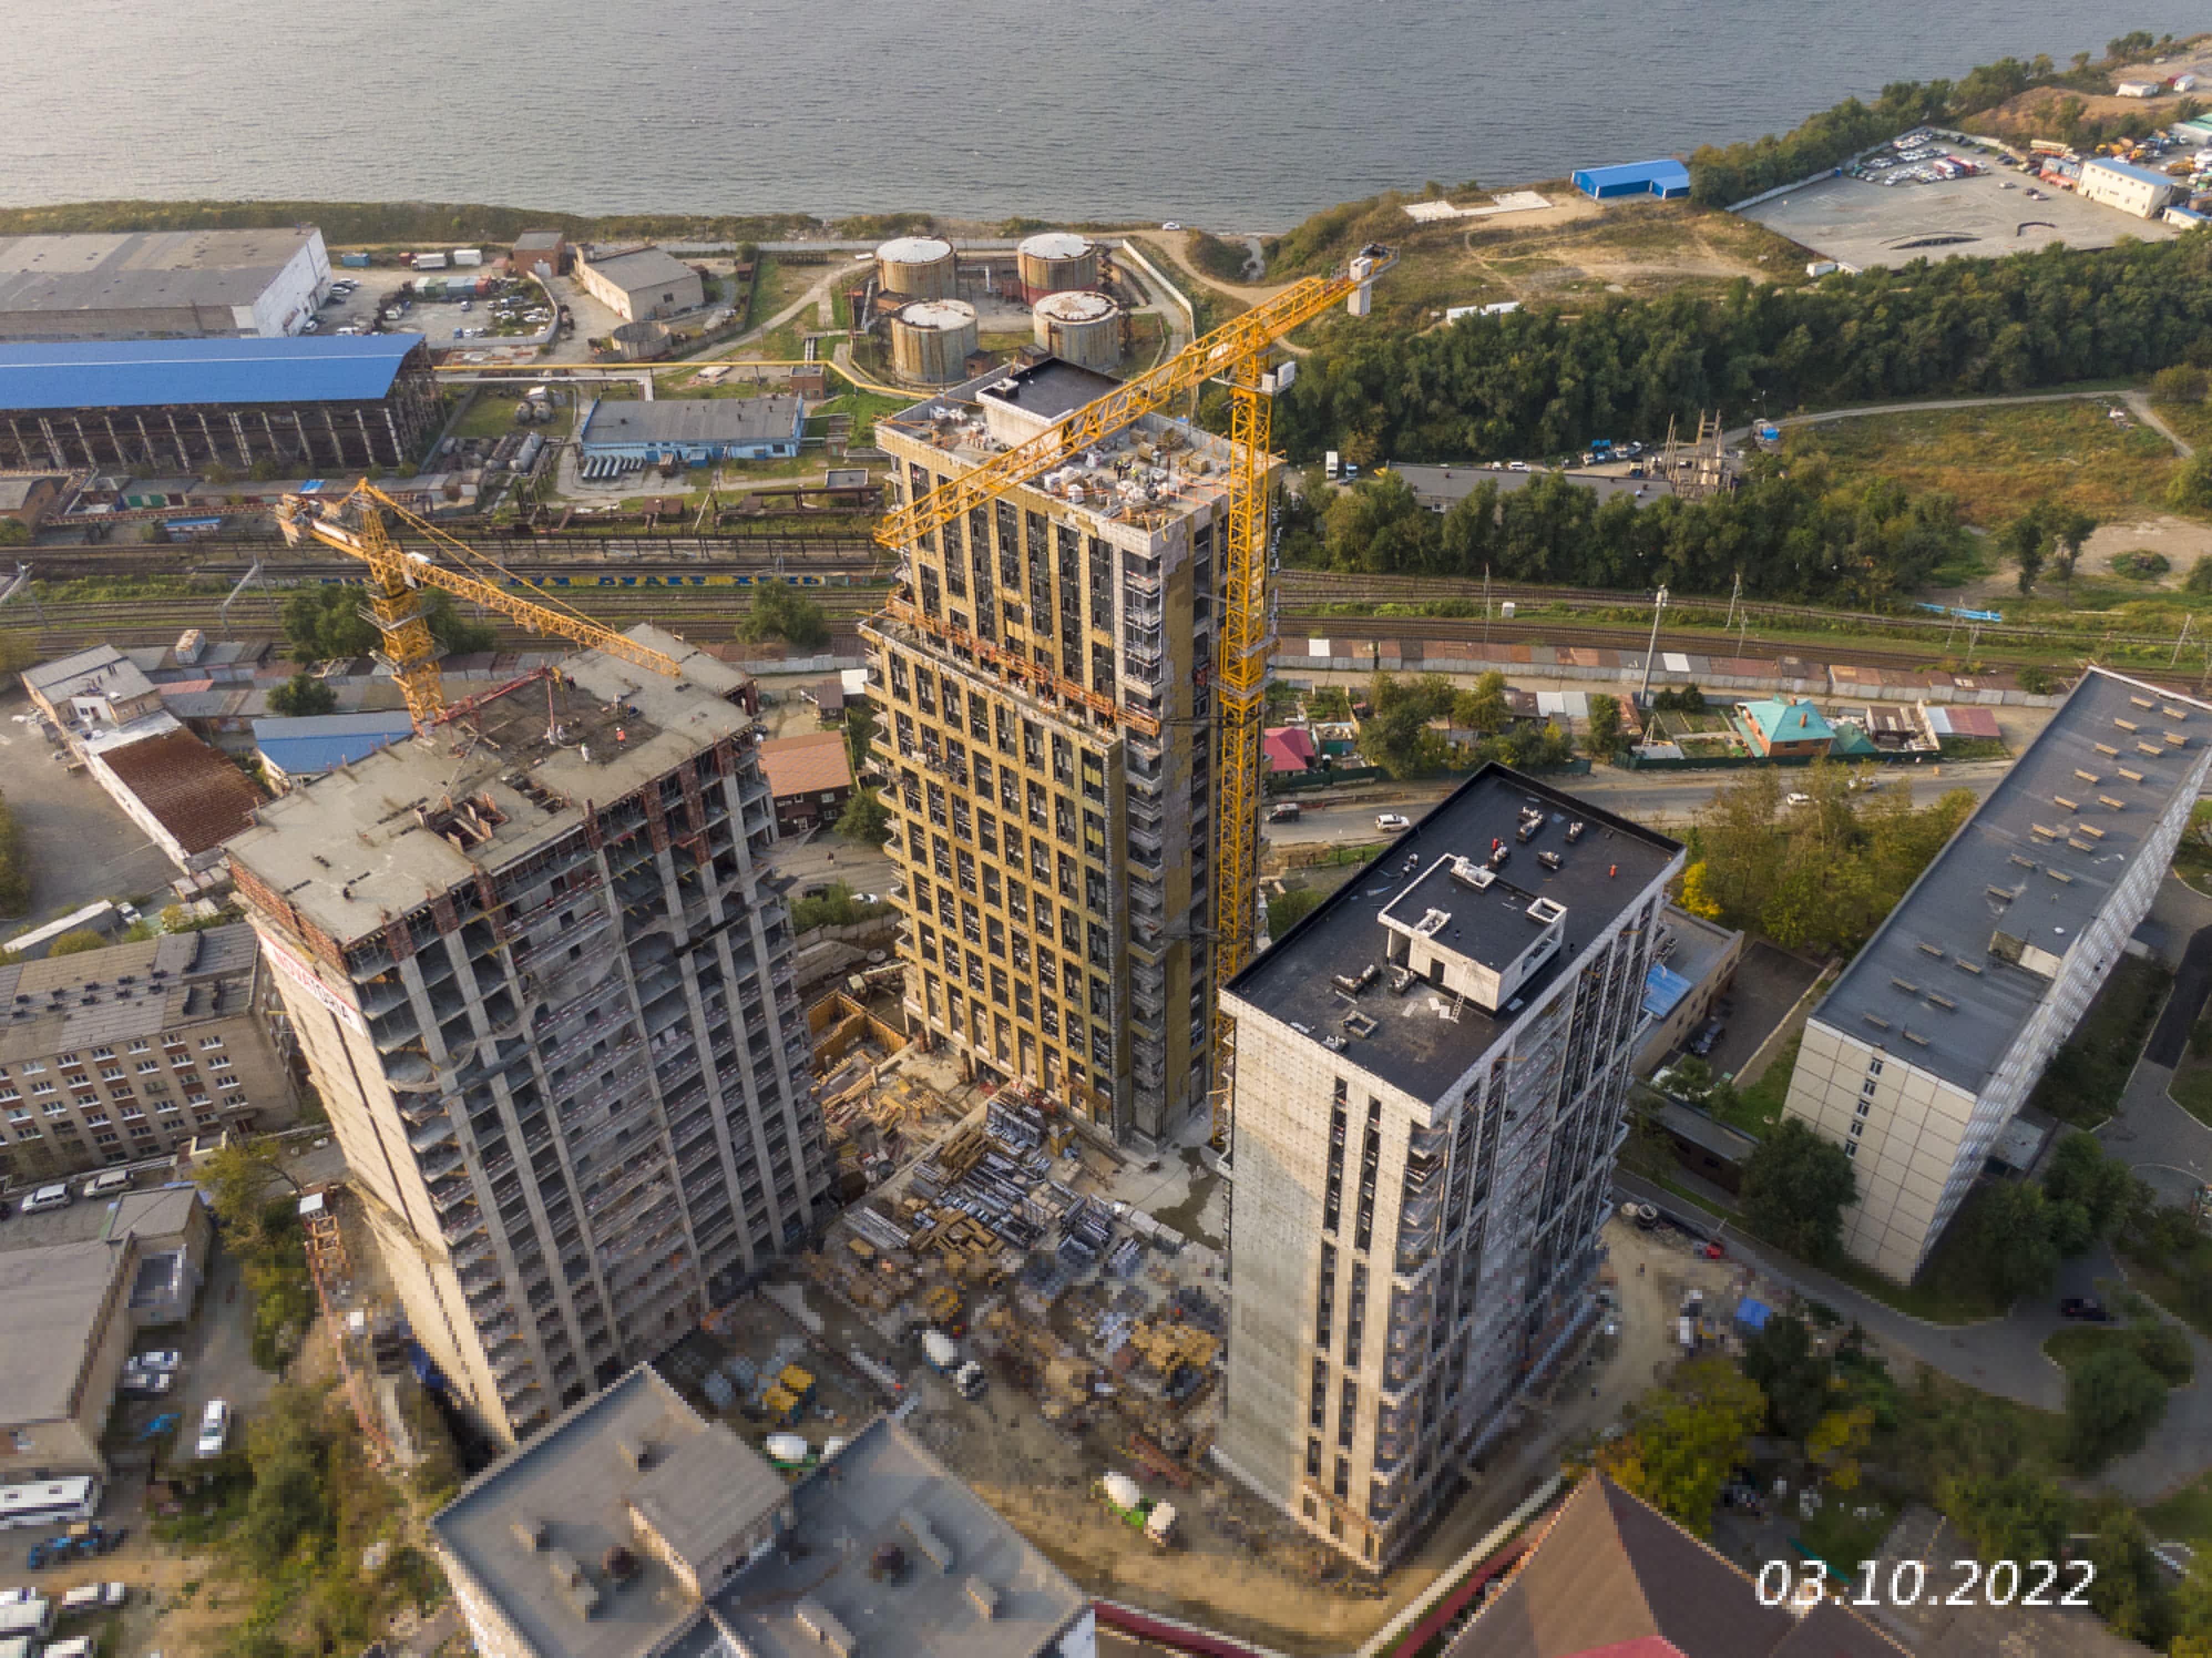 Жилой комплекс Новатория / Novatoria, Октябрь, 2022, фото №2